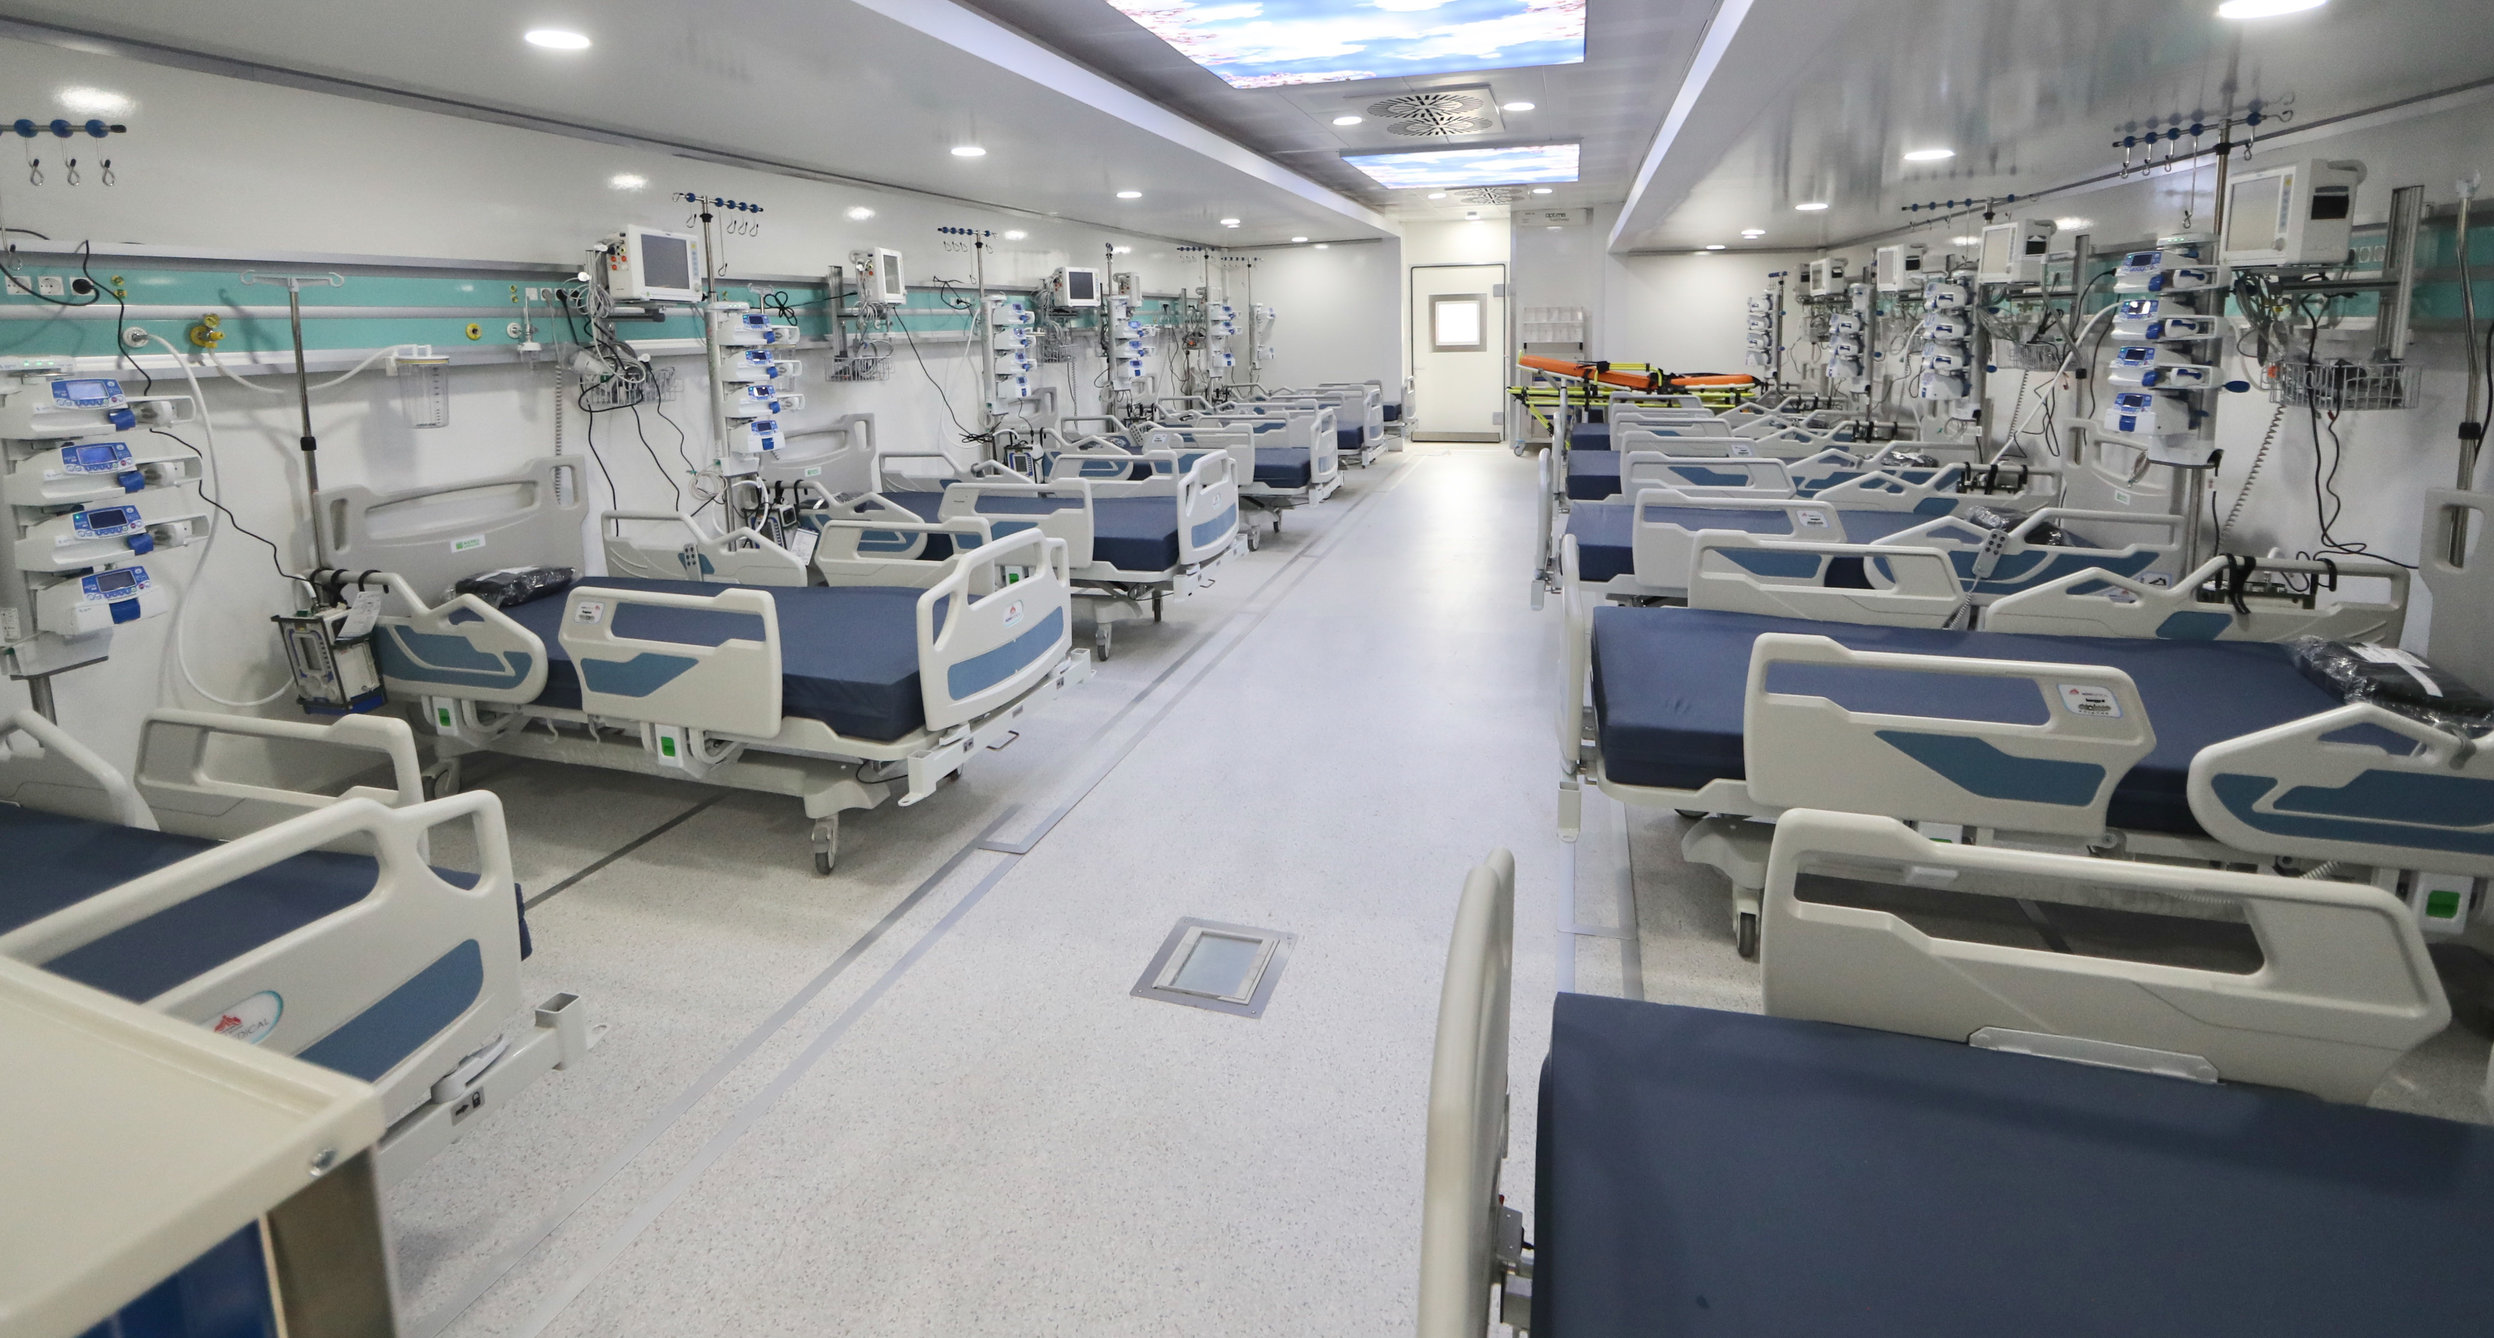 Medicul Alexie: Orice încăpere din spital se transformă ușor în cameră ATI. “E treaba managerilor de spital să se adapteze”